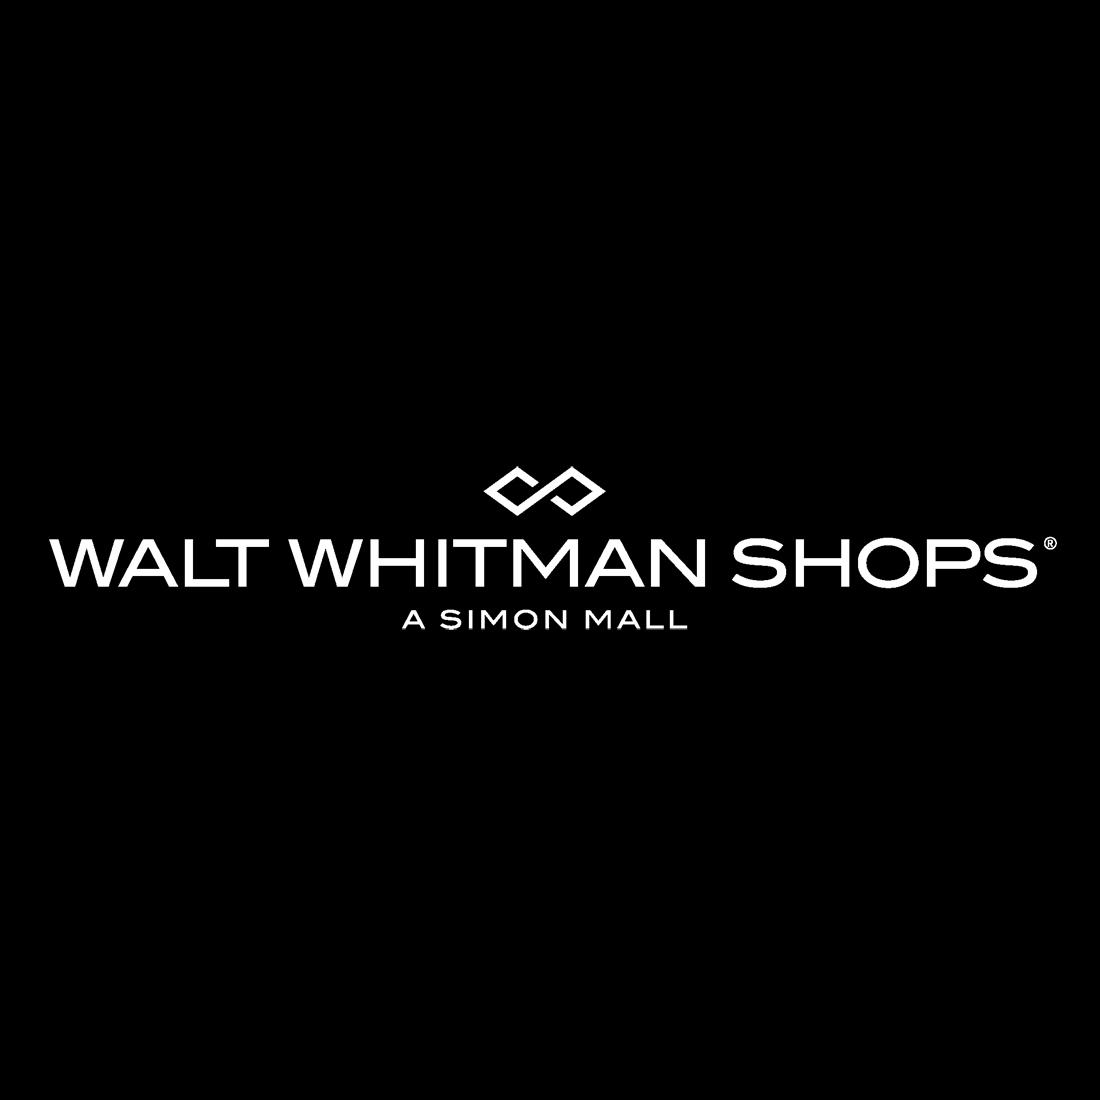 Walt Whitman Shops